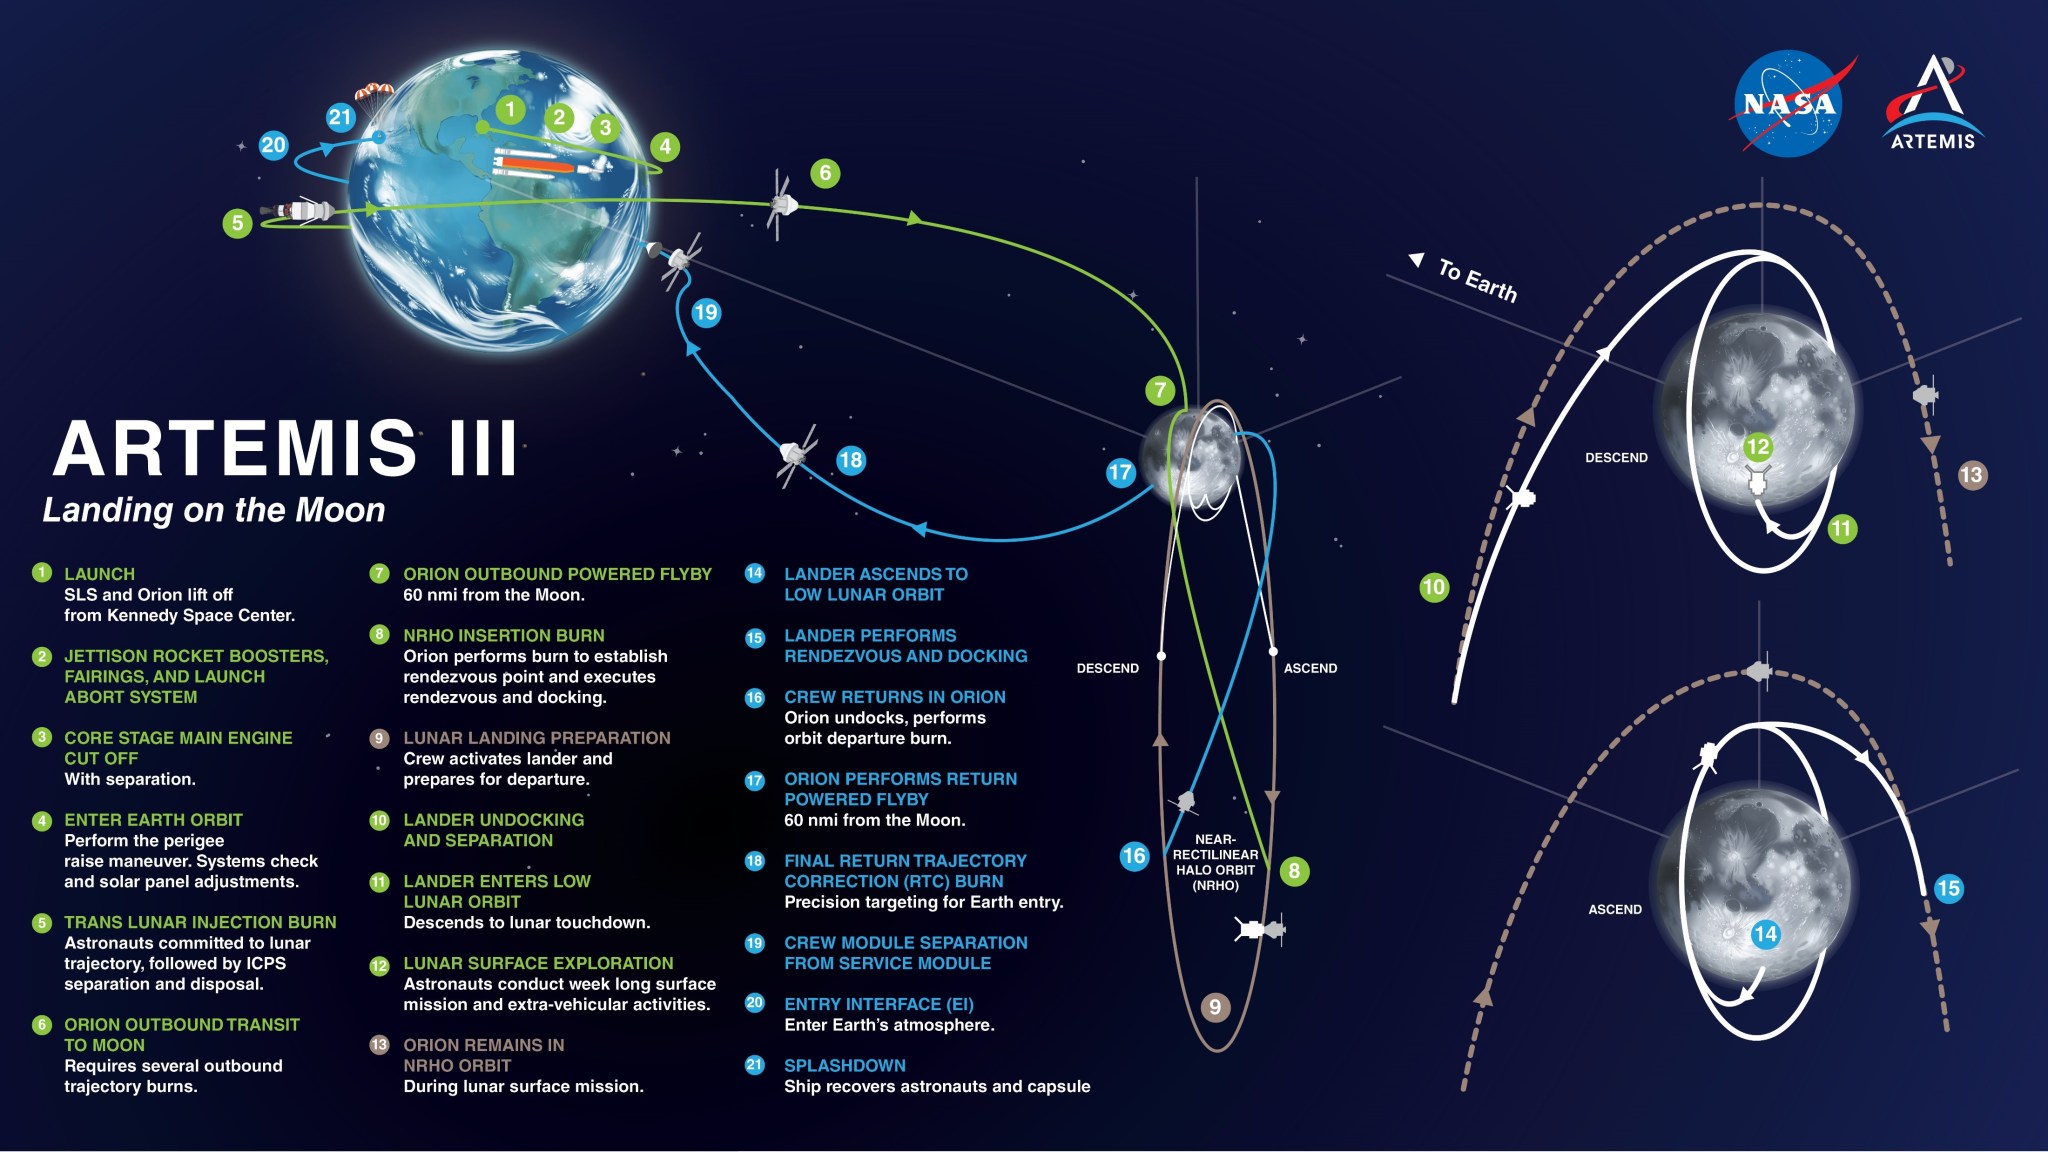 Artemis IV sarà la prima missione verso la Stazione Spaziale Gateway in orbita lunare, combinando la complessa coreografia di lanci multipli e attracco di veicoli spaziali in orbita lunare, e prevedendo il debutto della versione più grande e potente dell'SLS (Space Launch System) della NASA. razzo e un nuovo lanciatore mobile.